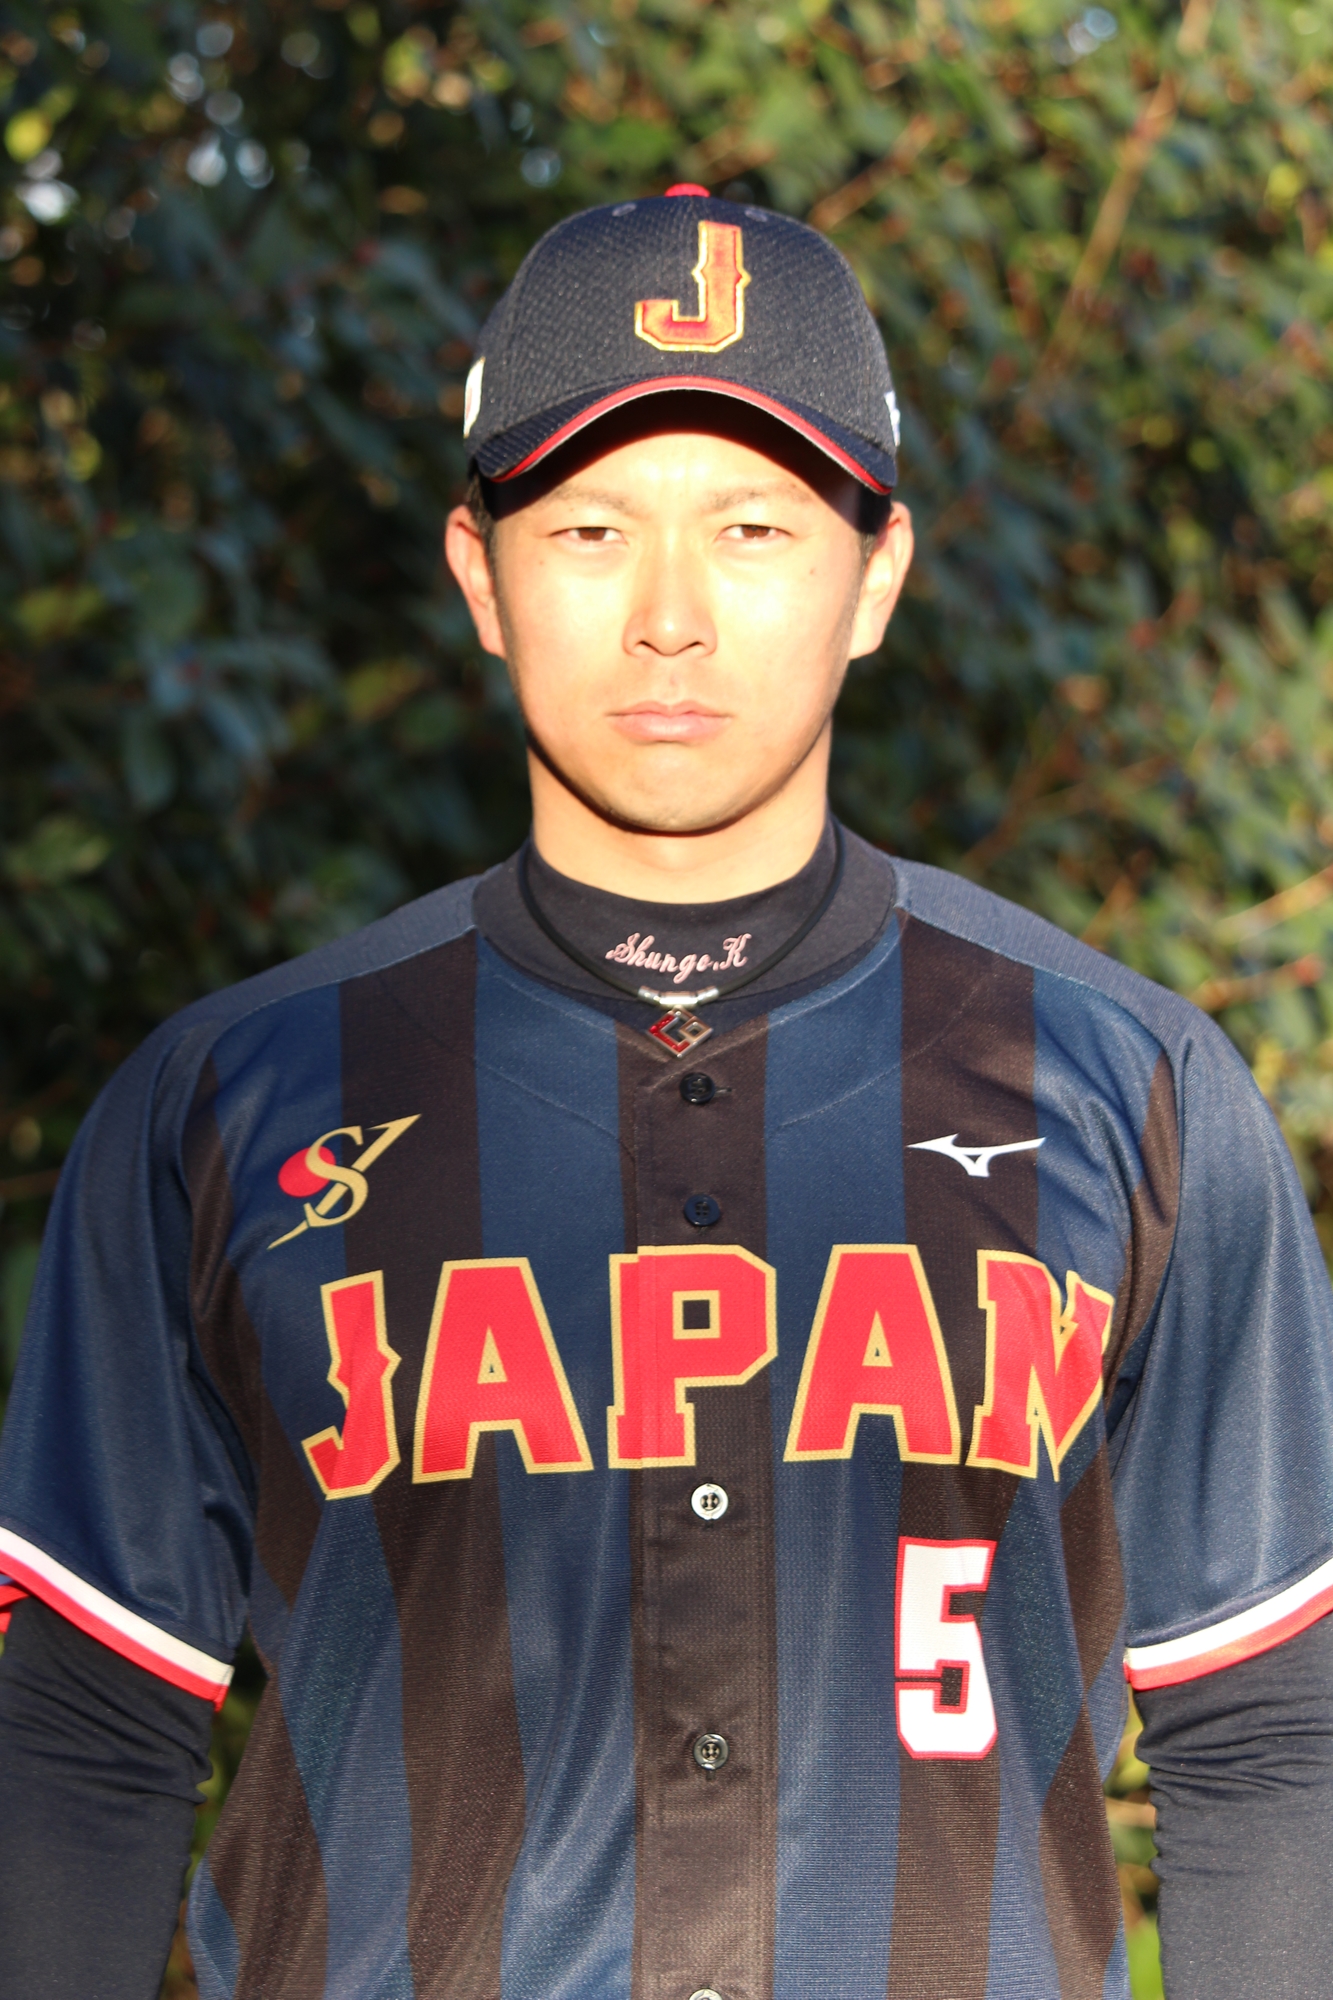 ユニフォーム Swbc Japan クラブ軟式野球日本代表